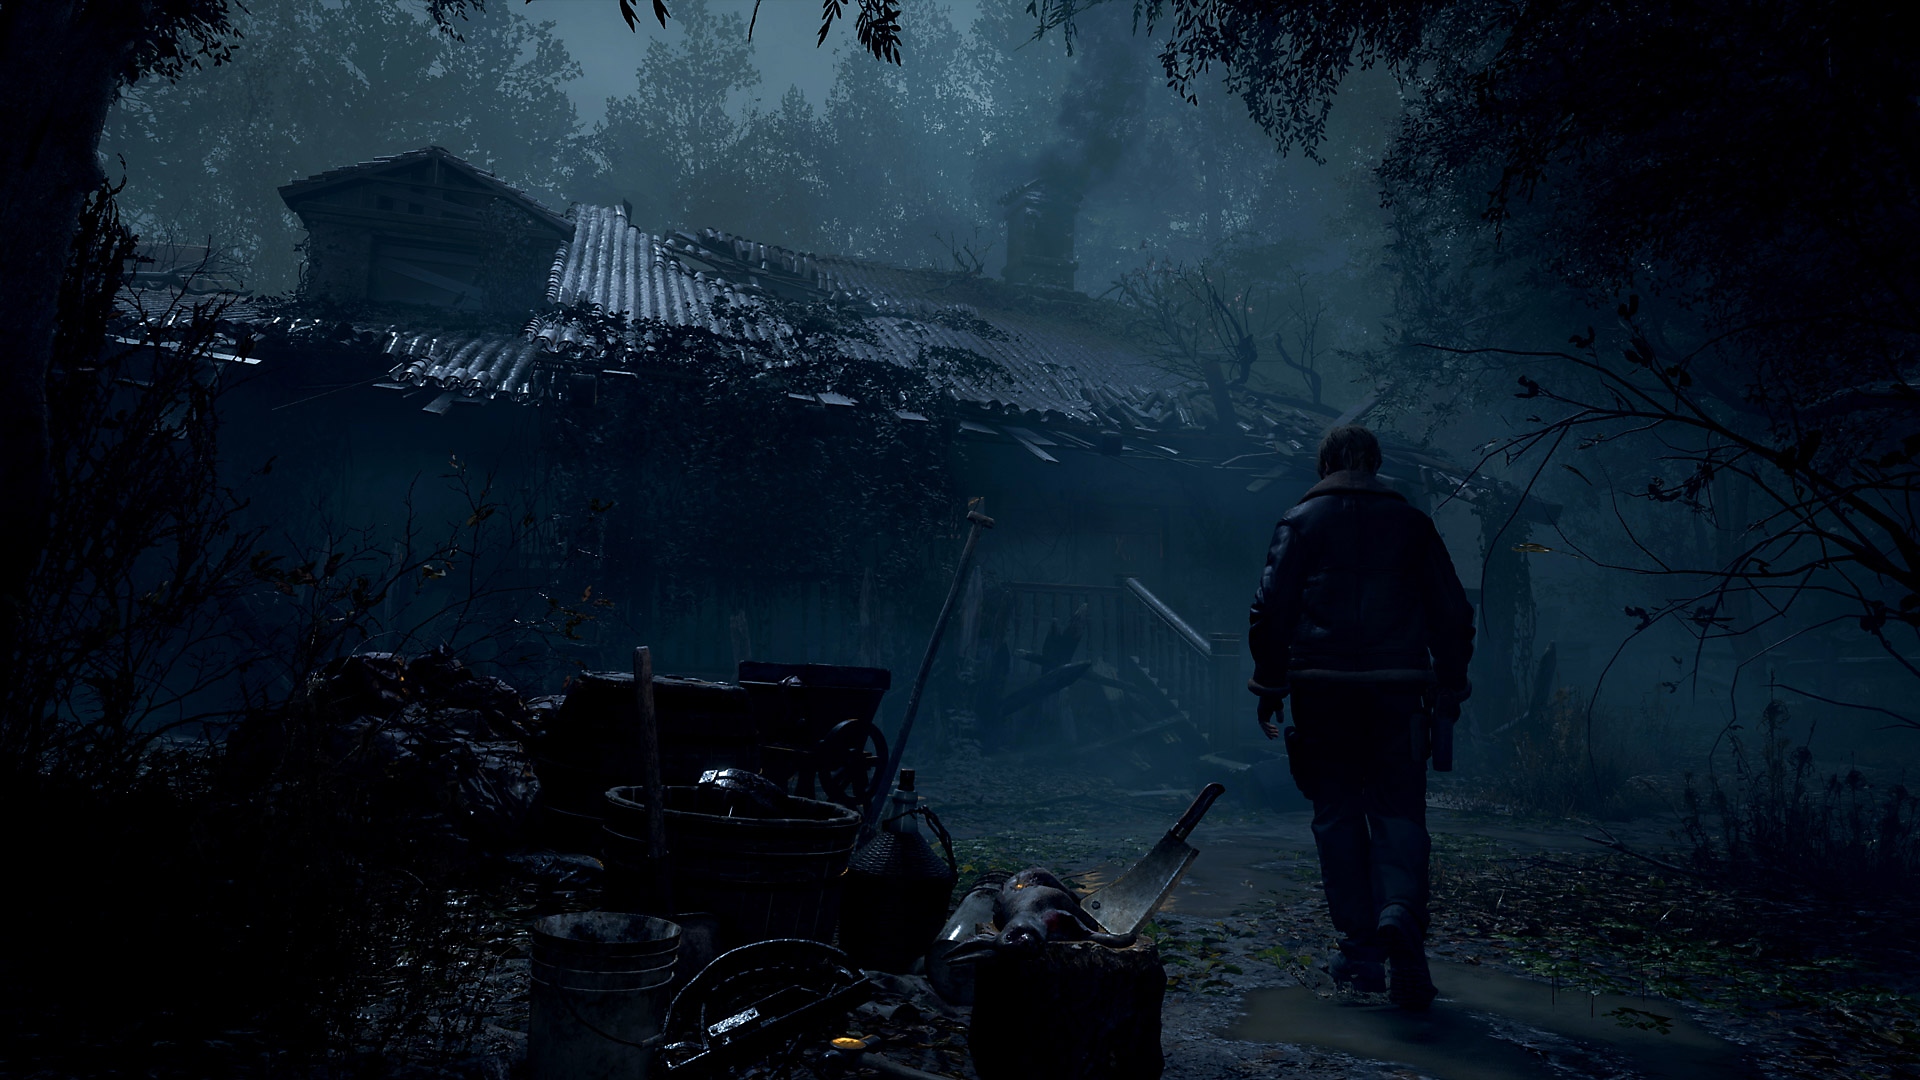 Istantanea della schermata di Resident Evil 4 che mostra Leon Kennedy che si avvicina a un'abitazione rurale fatiscente.